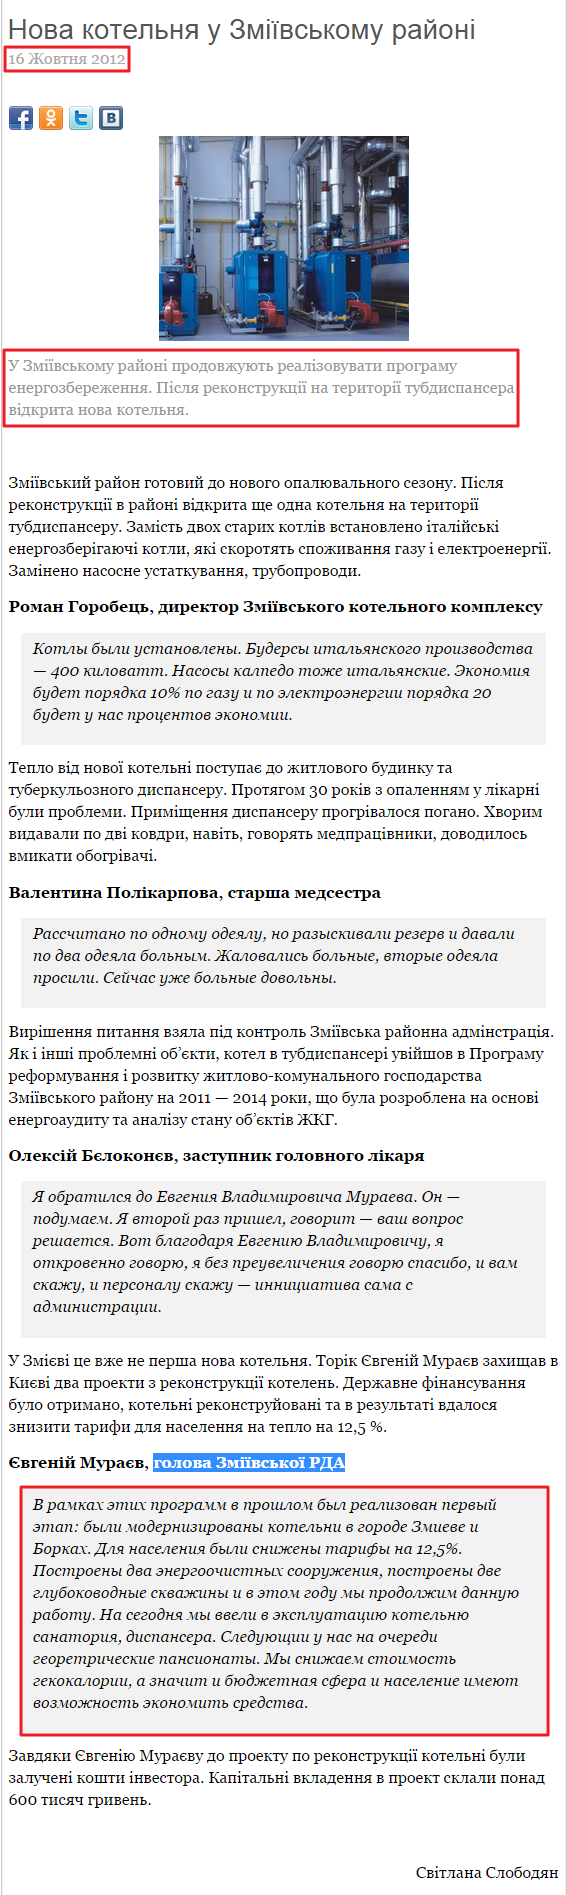 http://otb.com.ua/programs/inform-analit/novyny/nova-kotelnja-u-zmijivskomu-rajoni.html